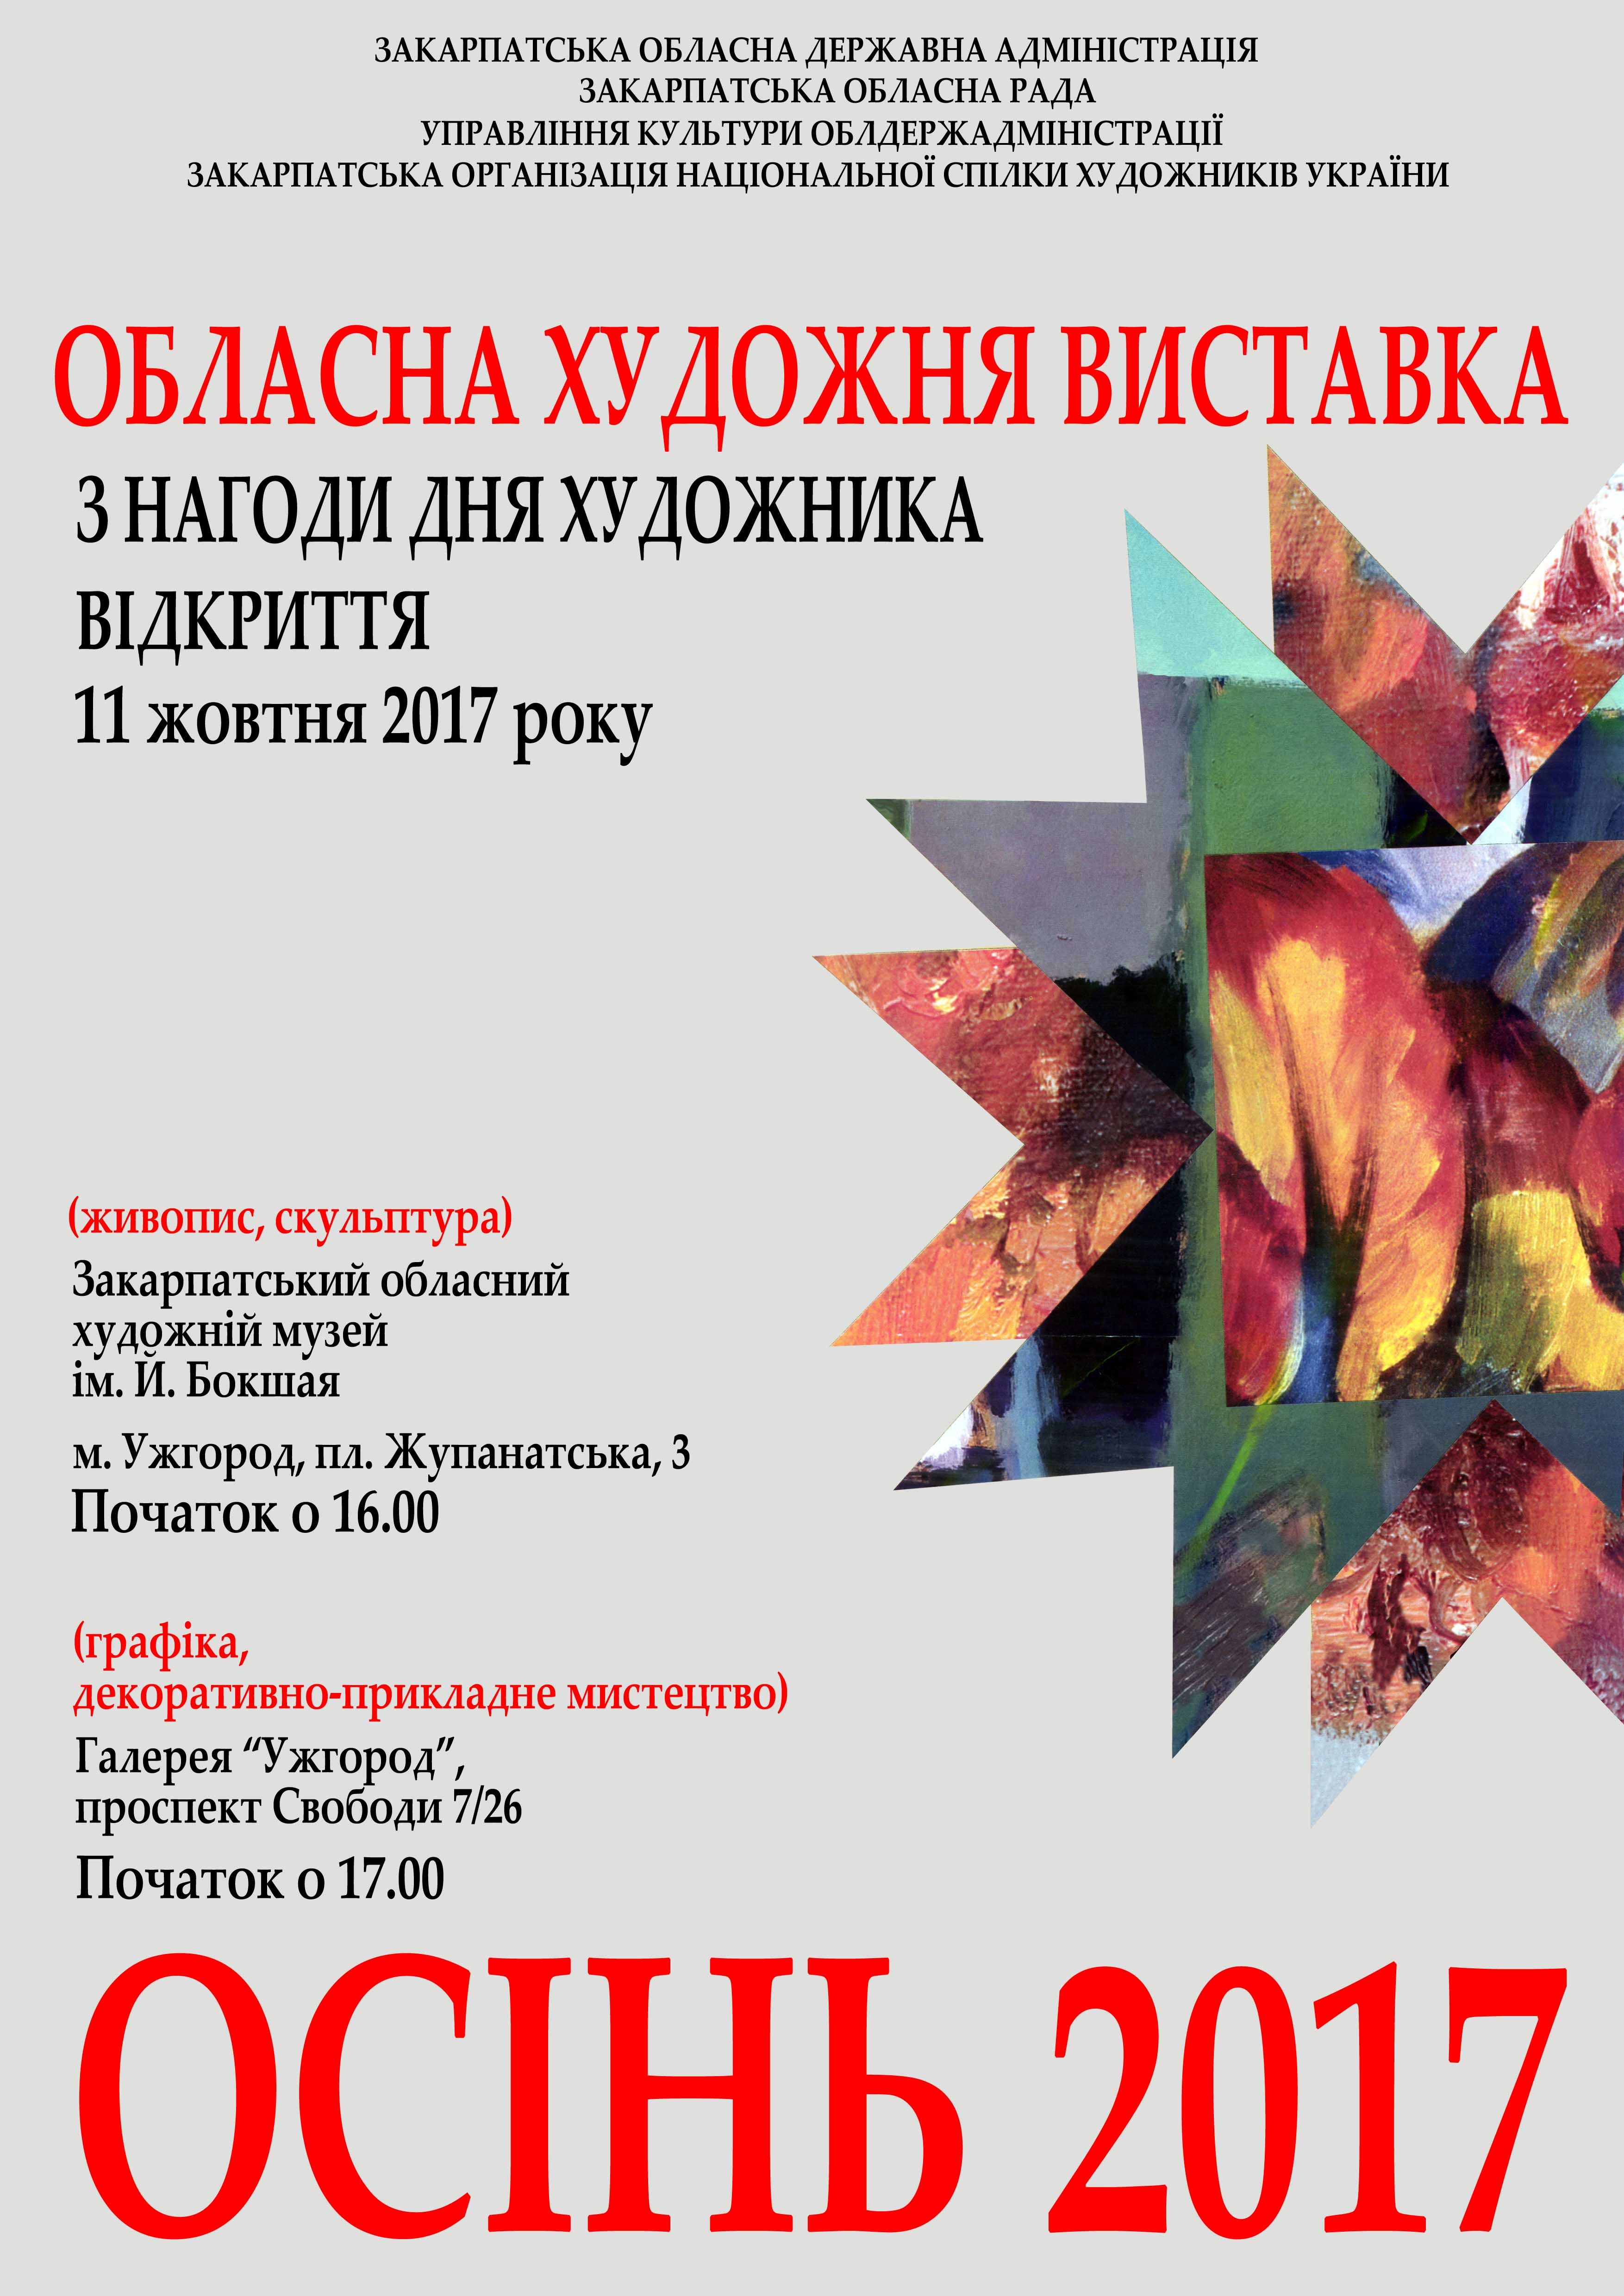 8 жовтня художники України відзначали своє професійне свято. З цієї нагоди виставку-подарунок своїм шанувальникам, за добрим звичаєм, підготували і закарпатські митці. 